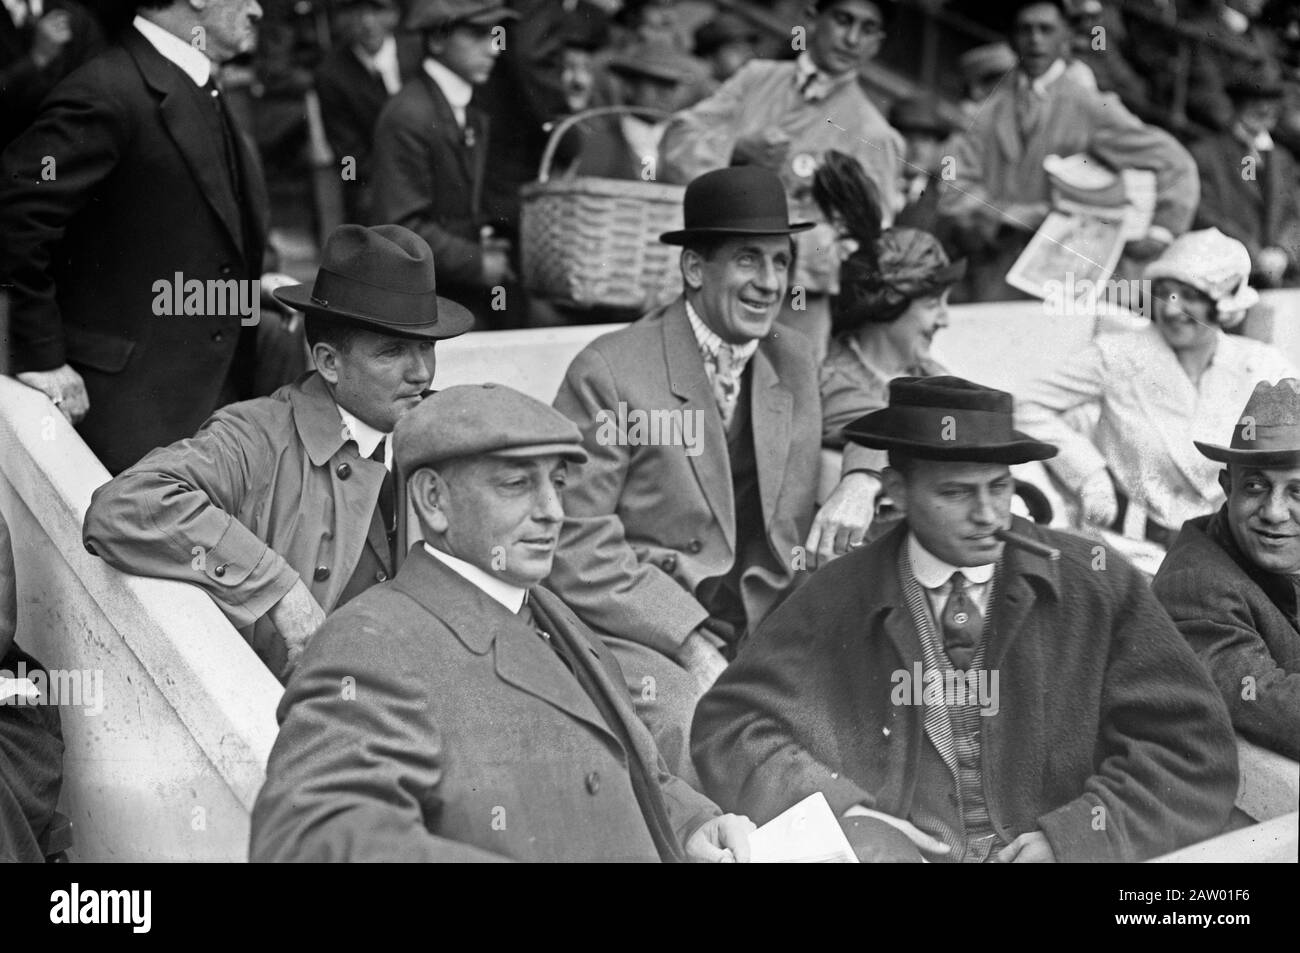 [Boxer Jim Corbett (centro) e Blossom Seeley (moglie di Rube Marquard) a sinistra di Corbett al gioco Uno della World Series 1913 al Polo Grounds New York (baseball)] 1913 7 ottobre. Foto Stock